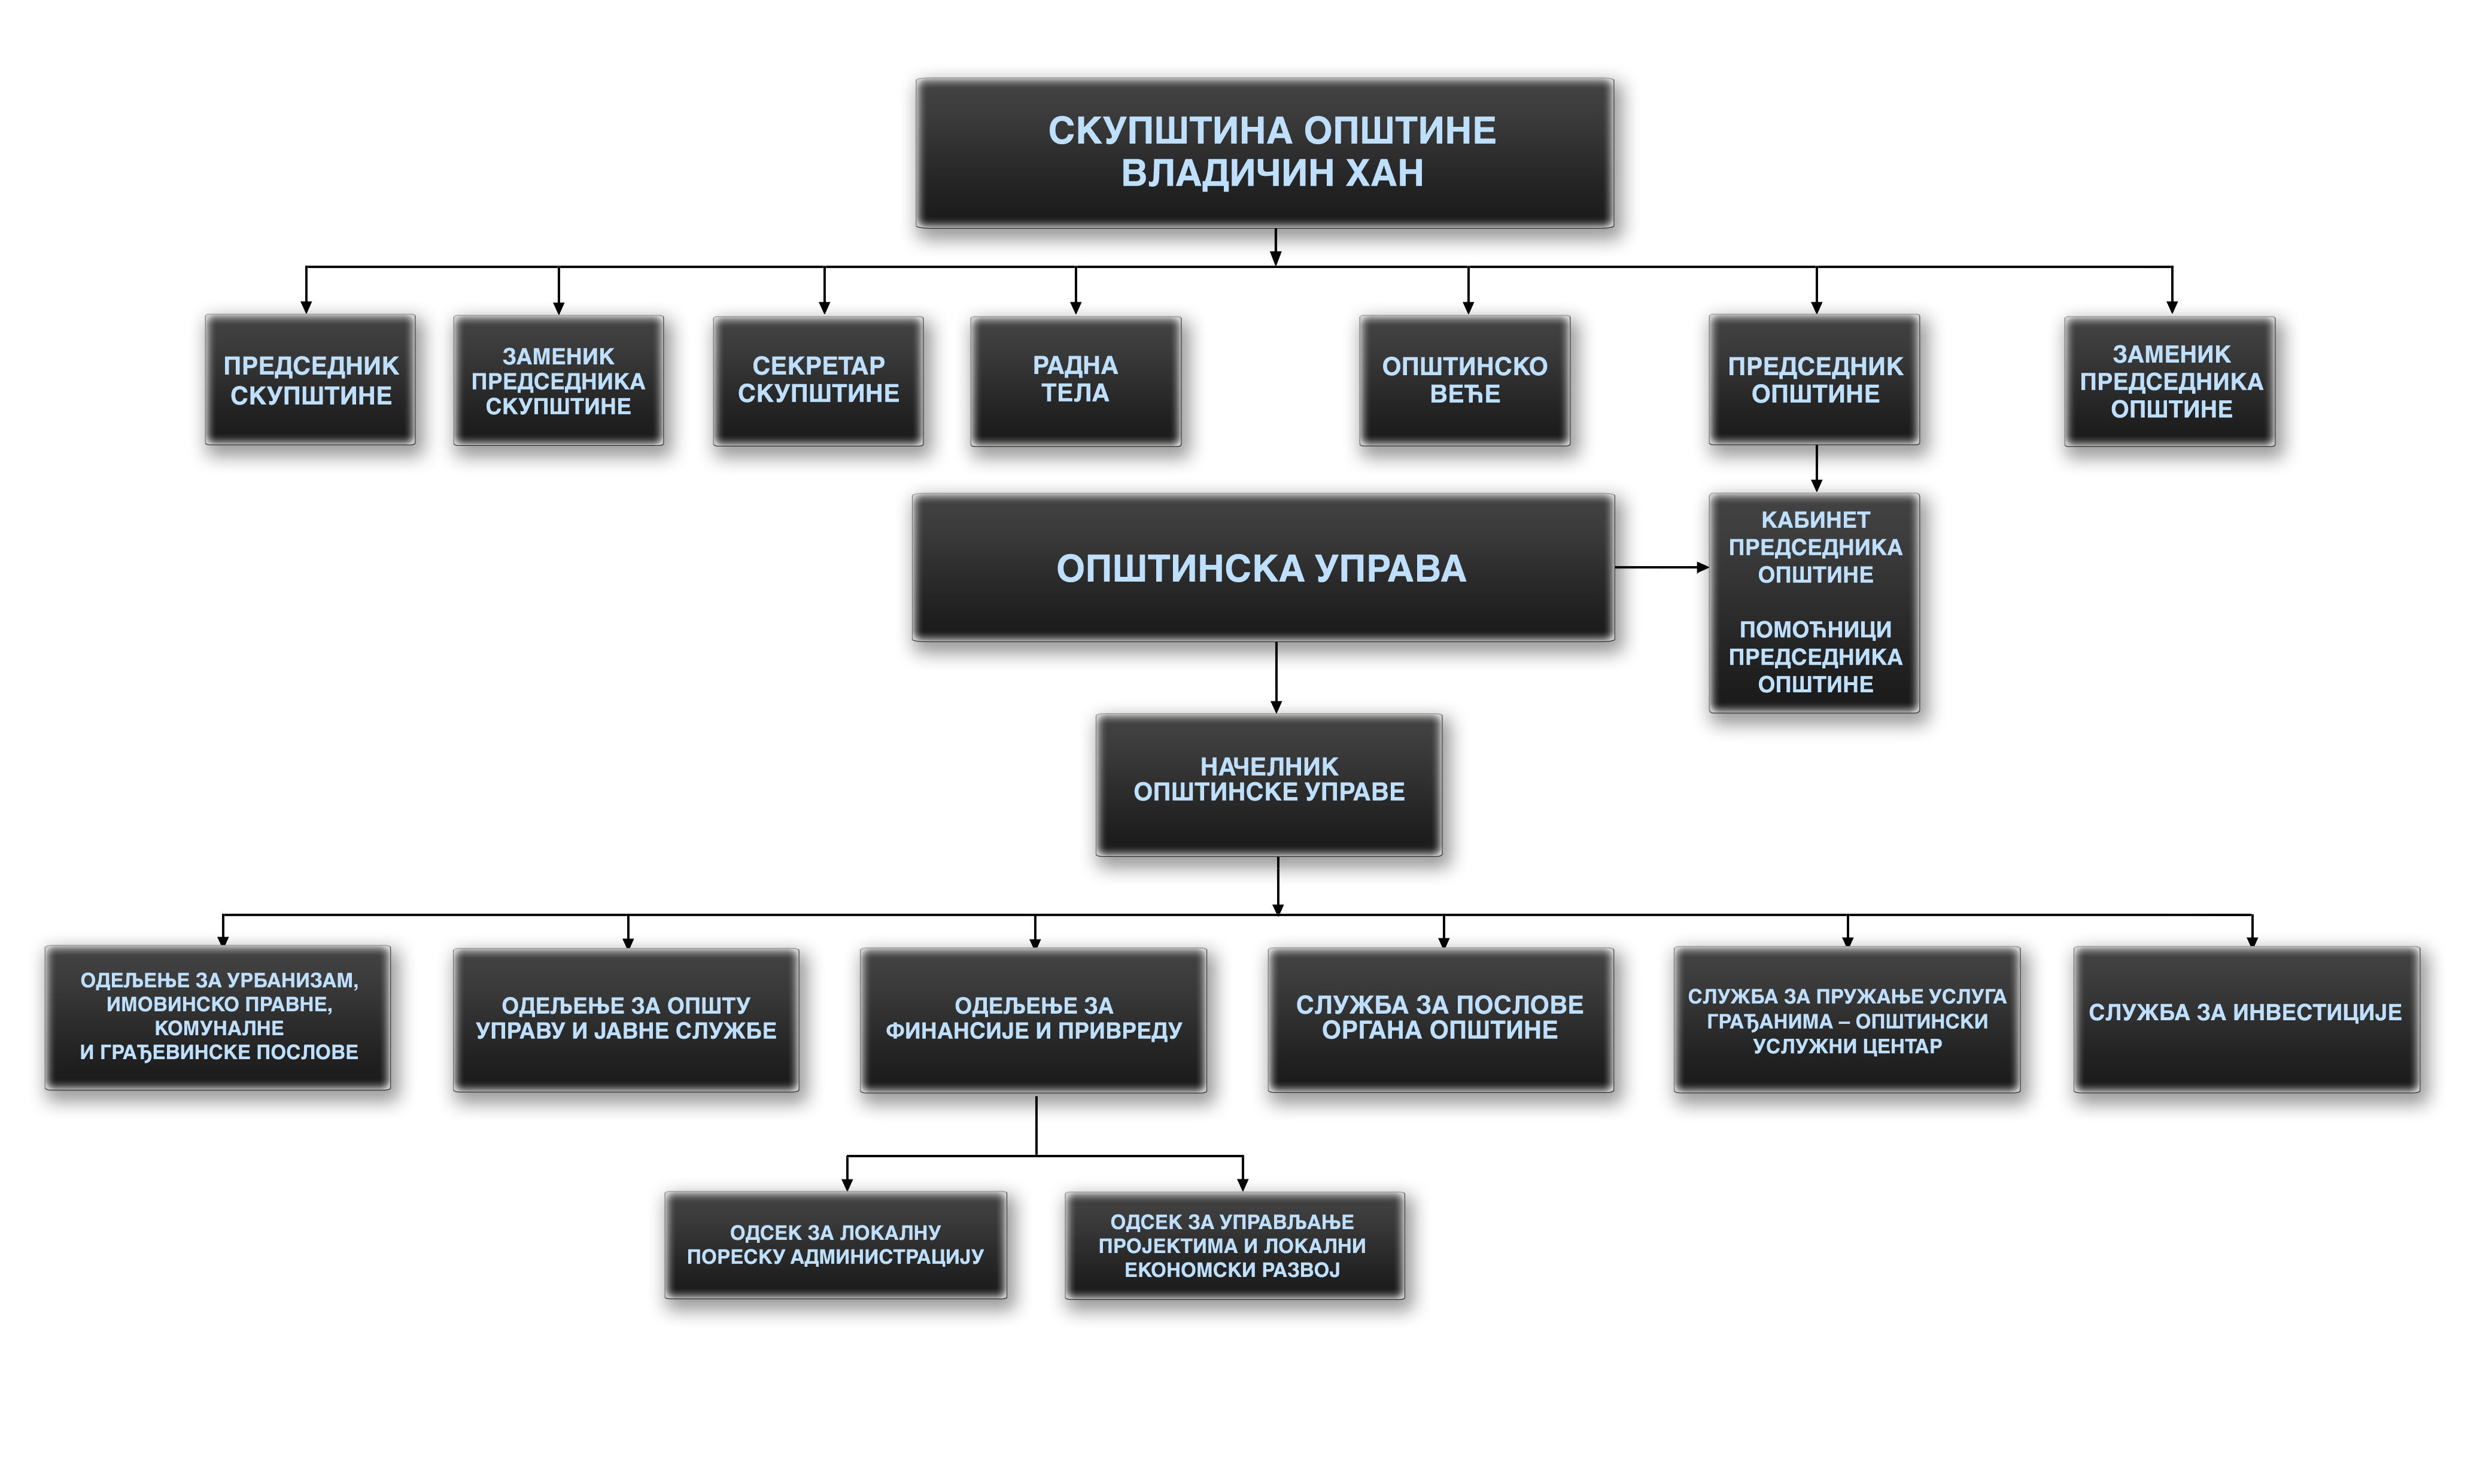 Графички приказ организационе структуре Општине Владичин Хан